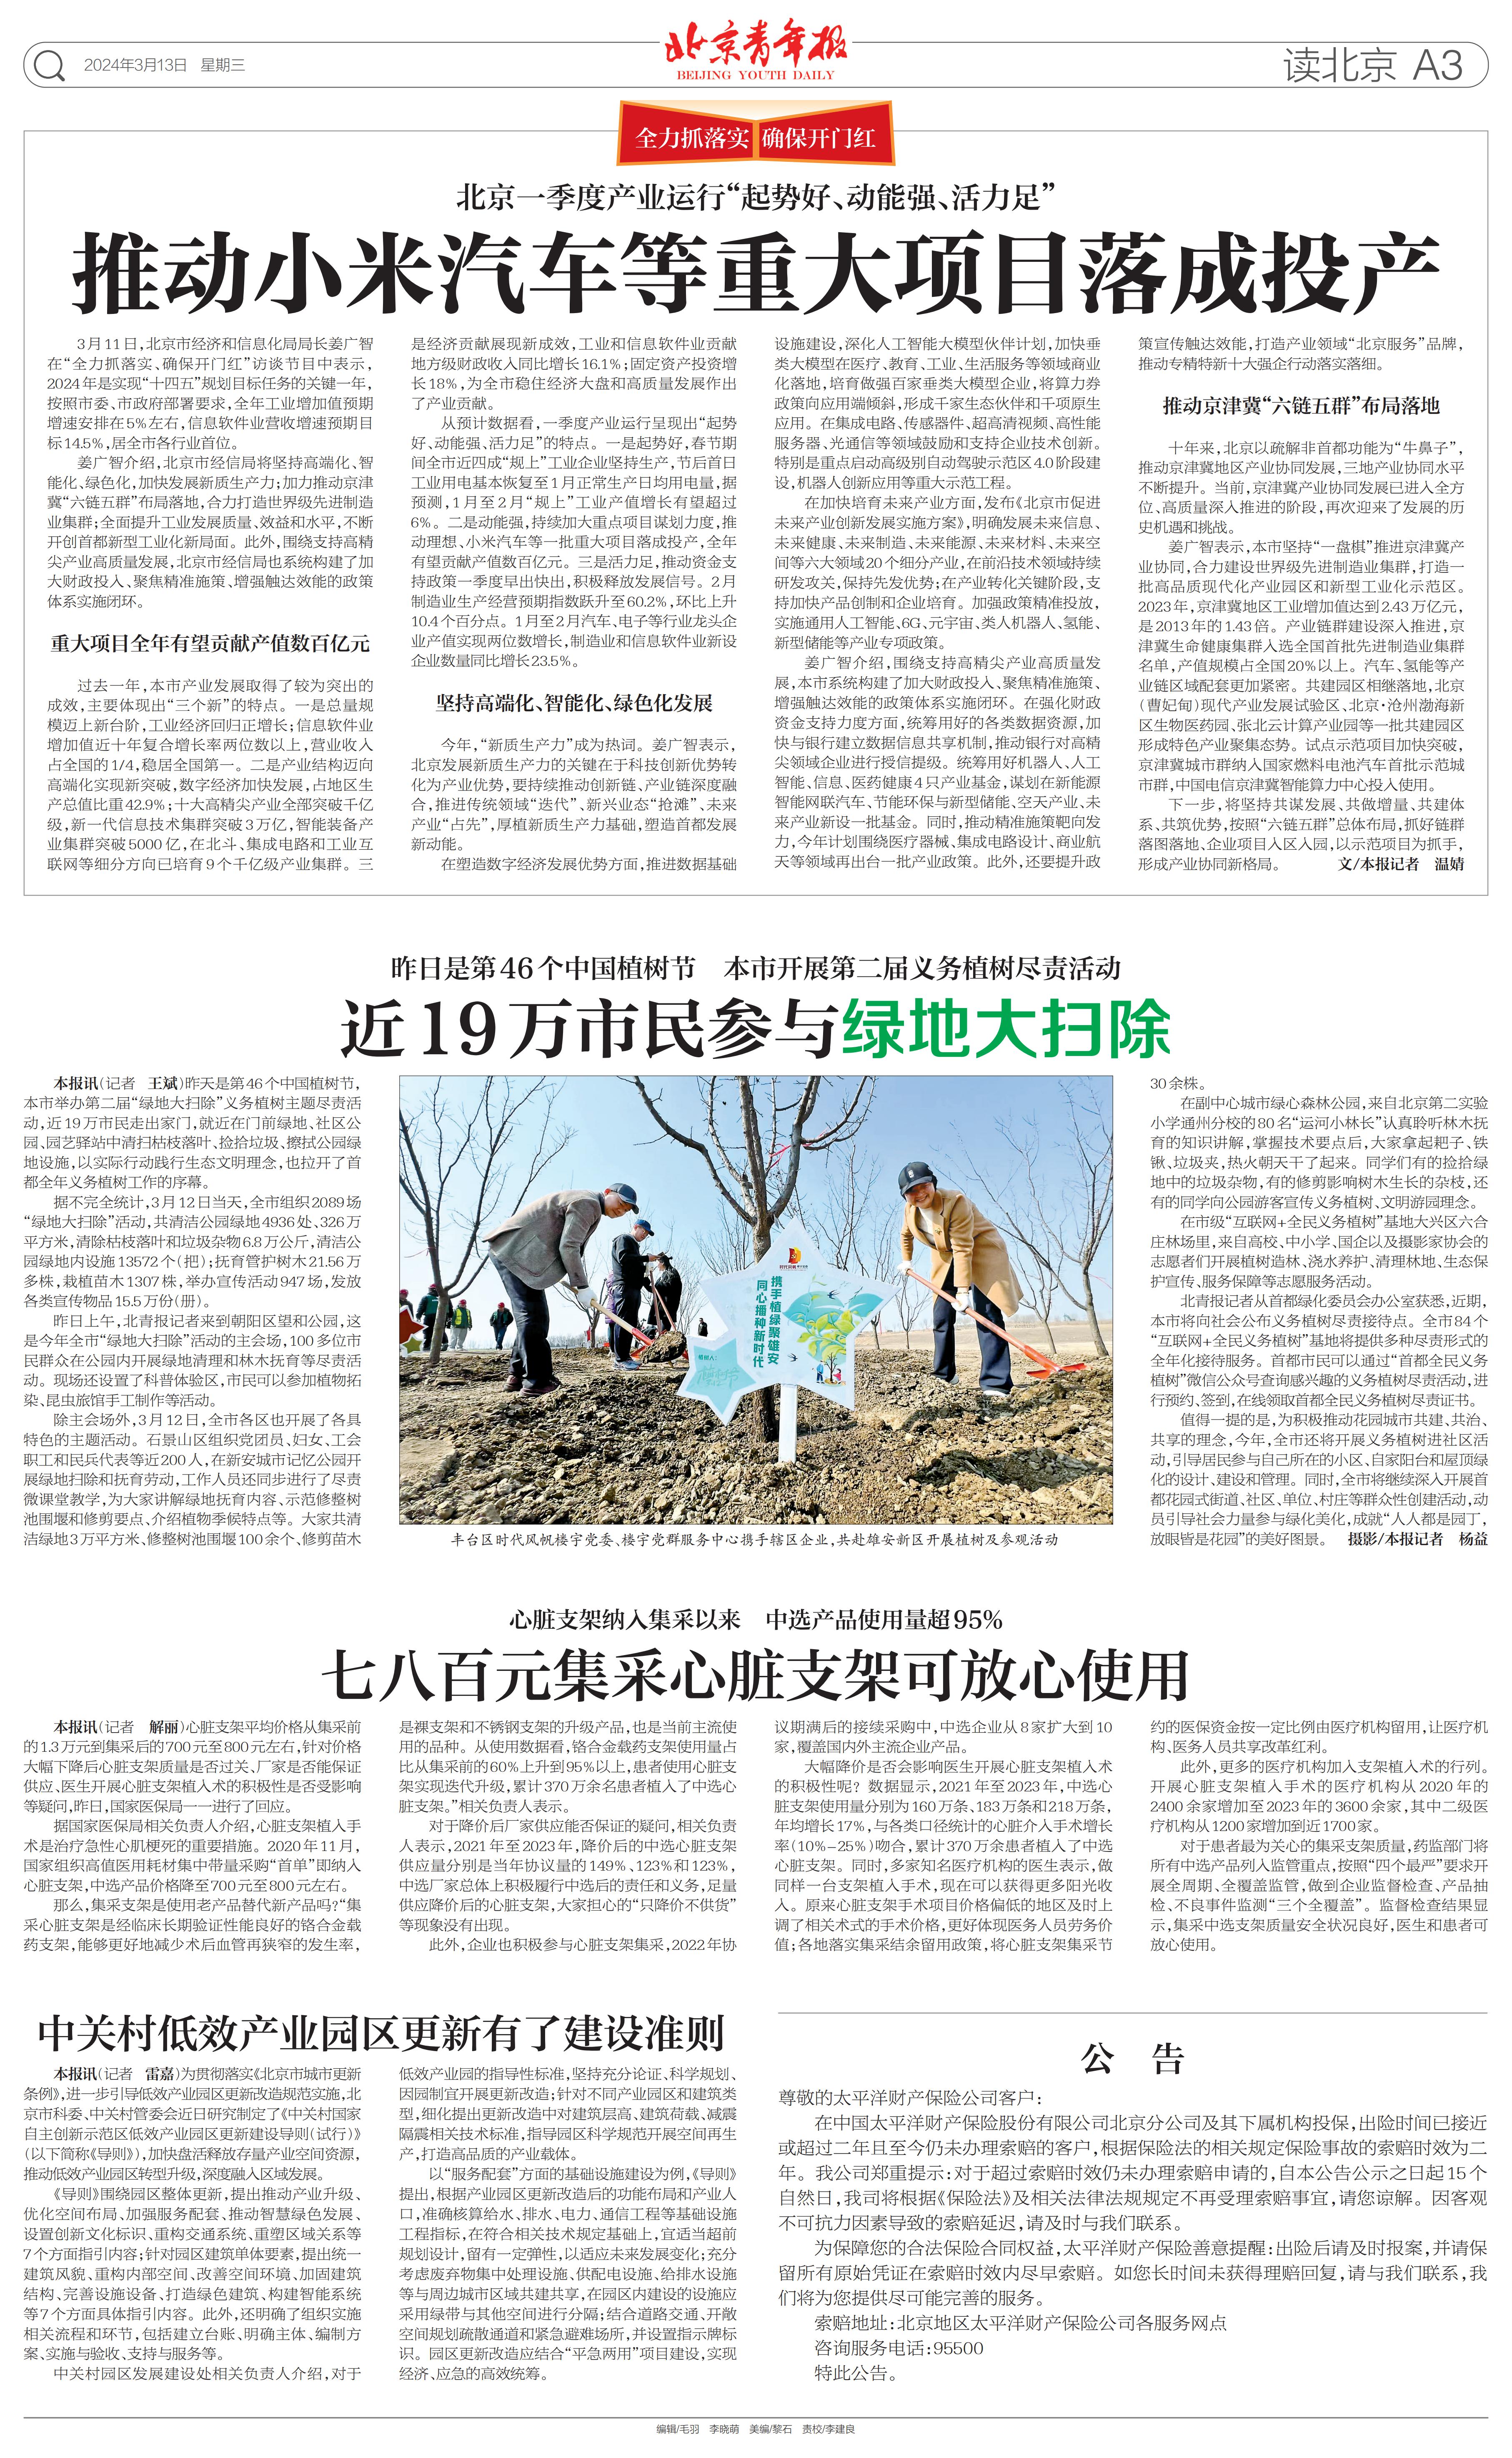 0313北京青年报-近19万市民参与绿地大扫除_00.jpg